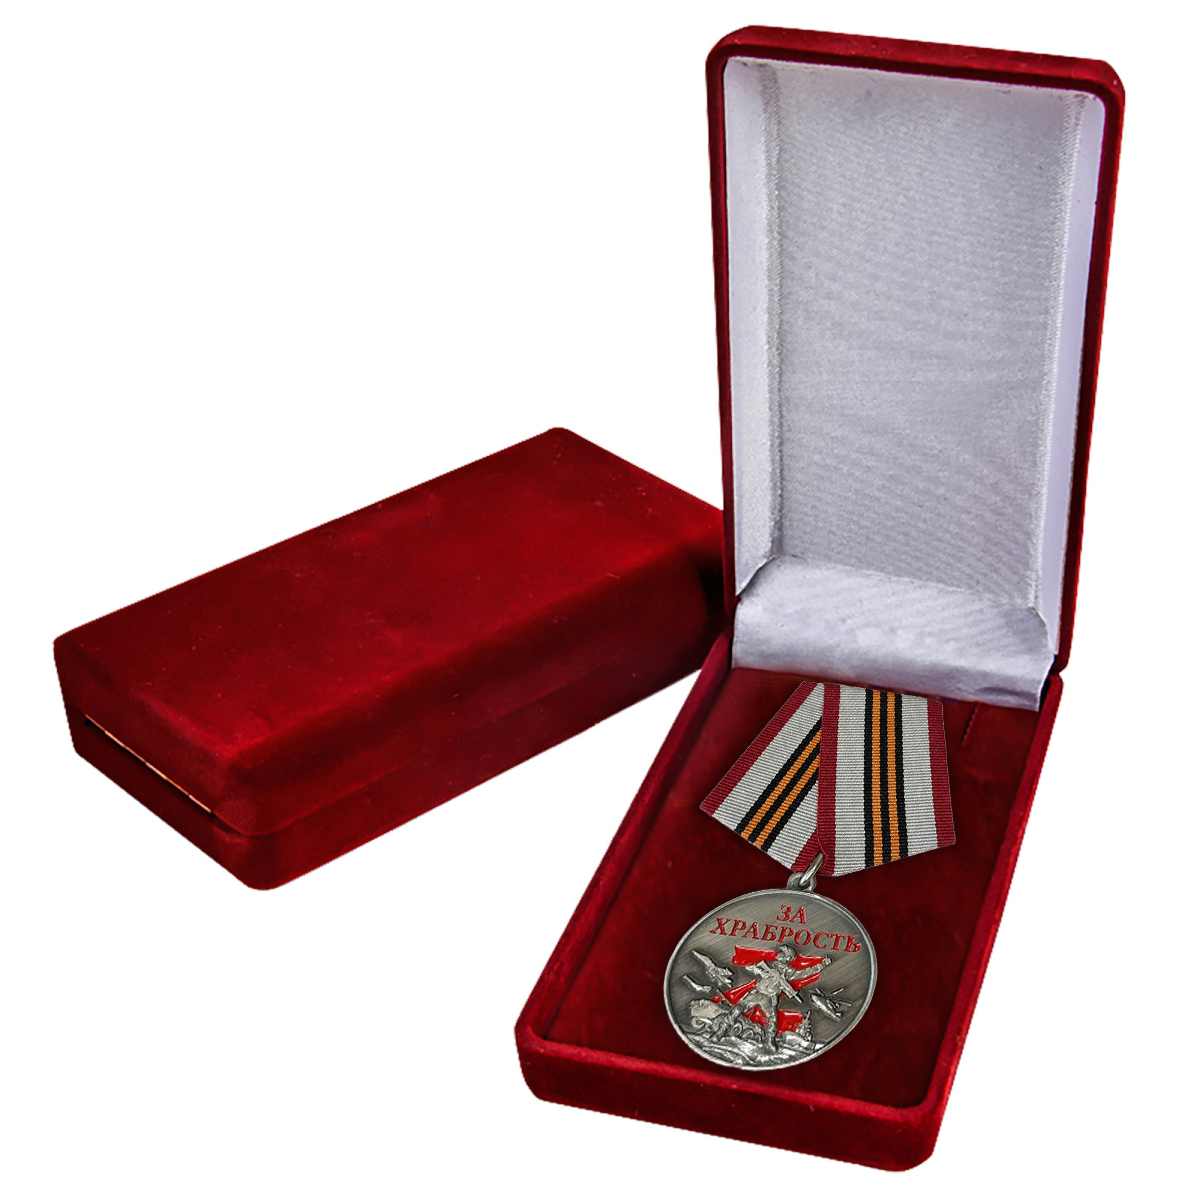 Медали "За храбрость" участникам СВО в футлярах